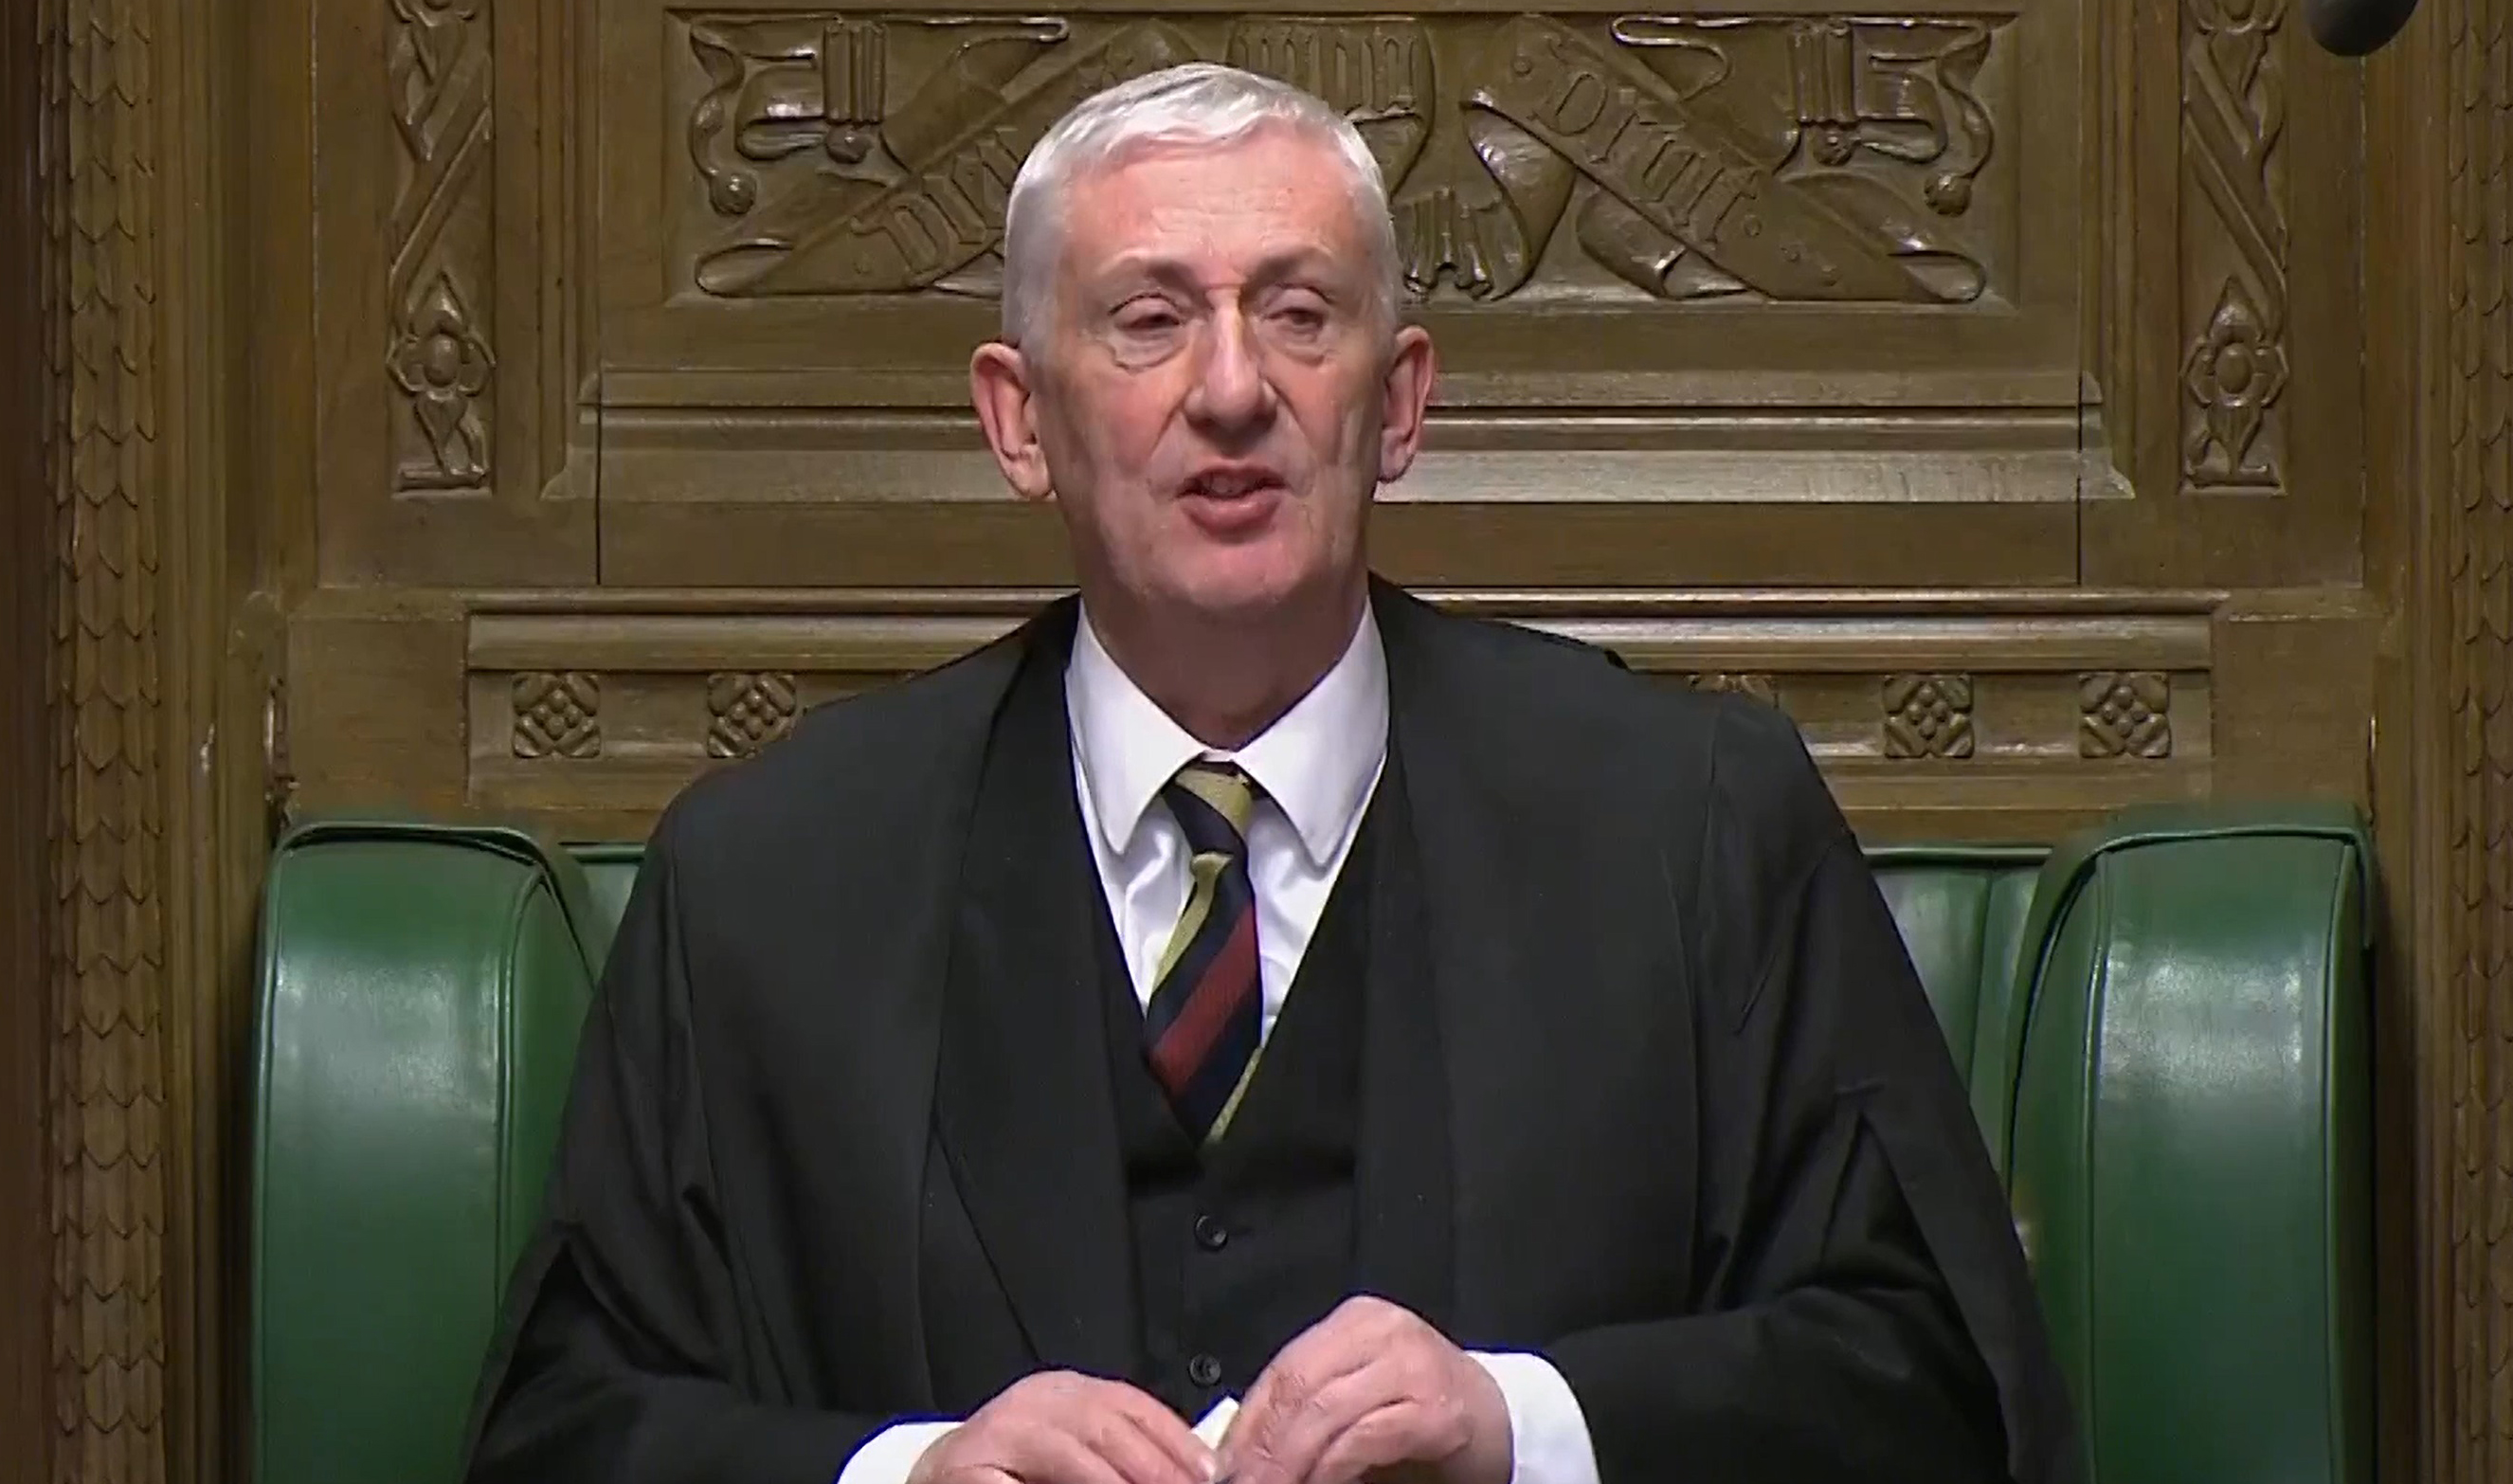 Der Sprecher des Unterhauses, Sir Lindsay Hoyle, sagte den Abgeordneten, er wisse, dass das gesamte Repräsentantenhaus sich ihm anschließen und sein Mitgefühl für den König zum Ausdruck bringen würde